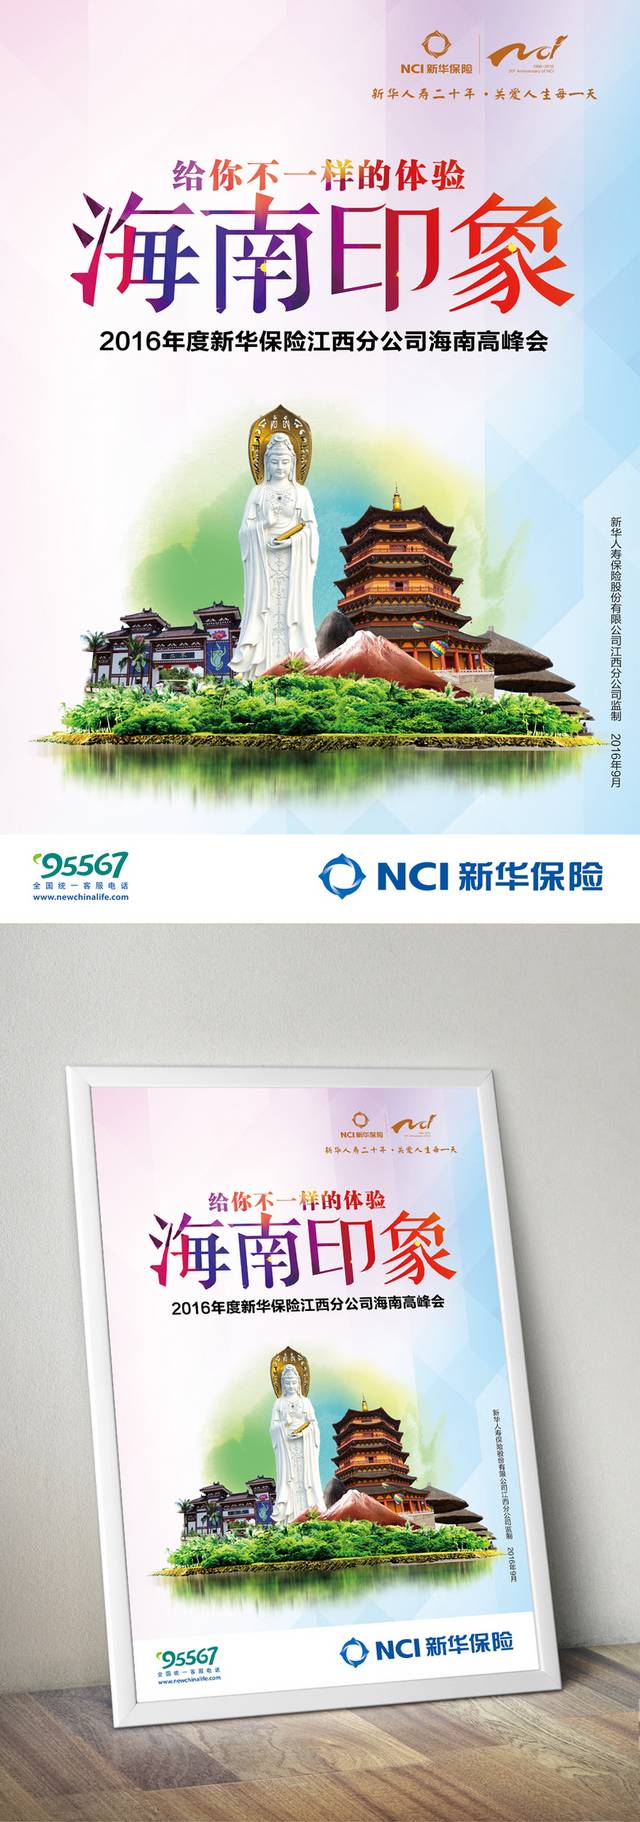 高清海南旅游海报设计